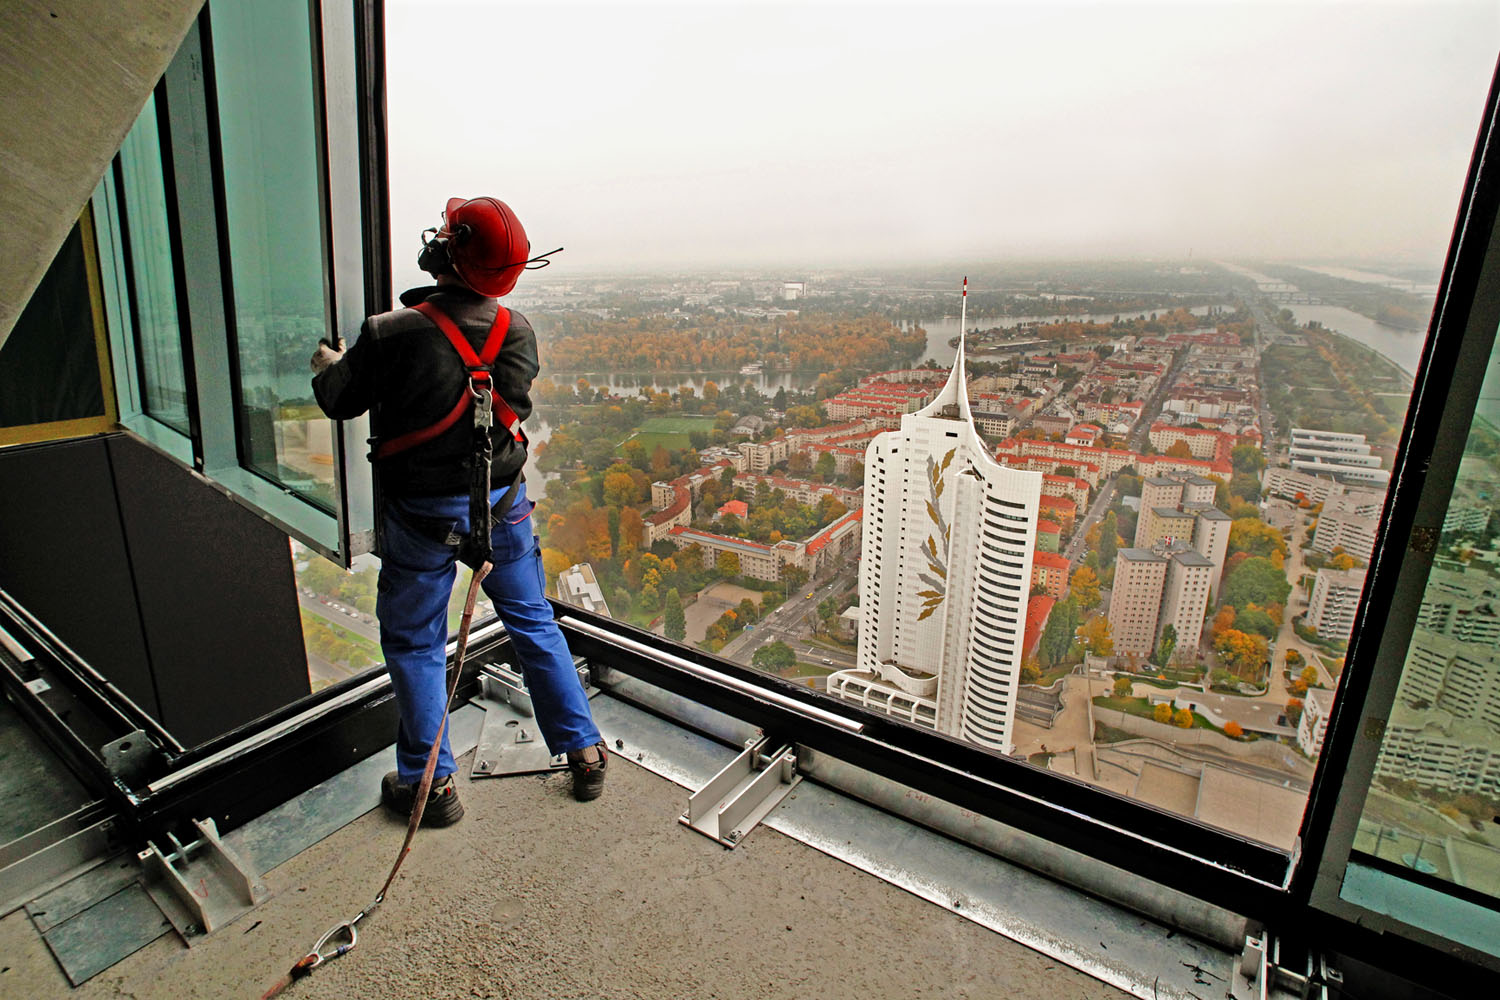 Építőmunkás Bécsben. Az osztrák és a külföldi munkavállalók megkülönböztetését tiltja az uniós jog